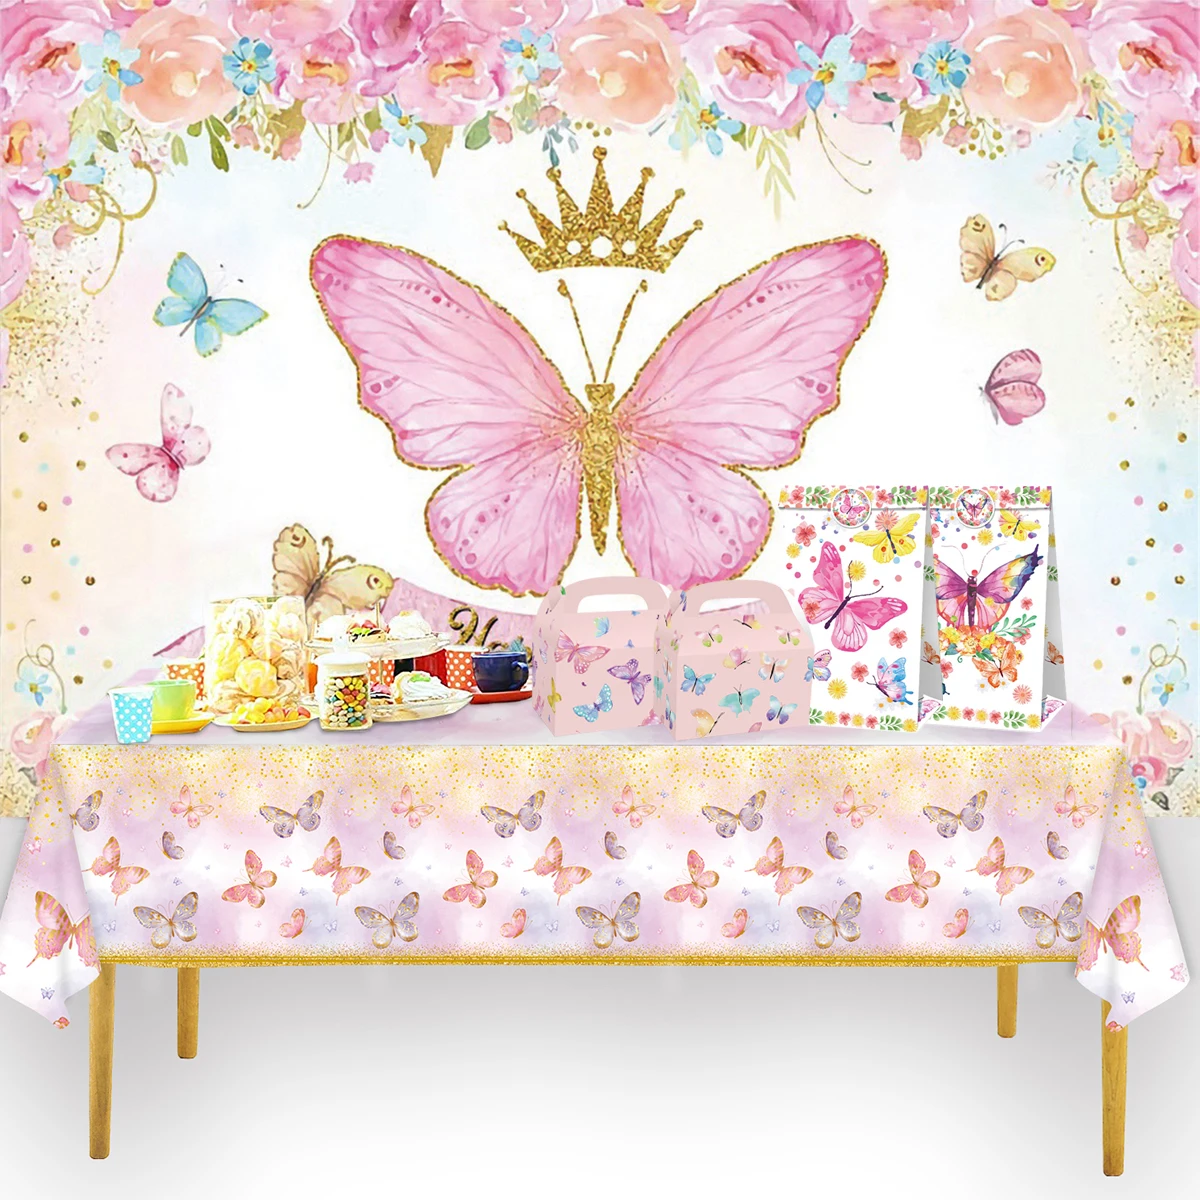 Růžová motýl narozeniny nádobí backdrop št'astný první první narozeniny večírek dekorace děti děvče motýl dekorace děťátko sprcha